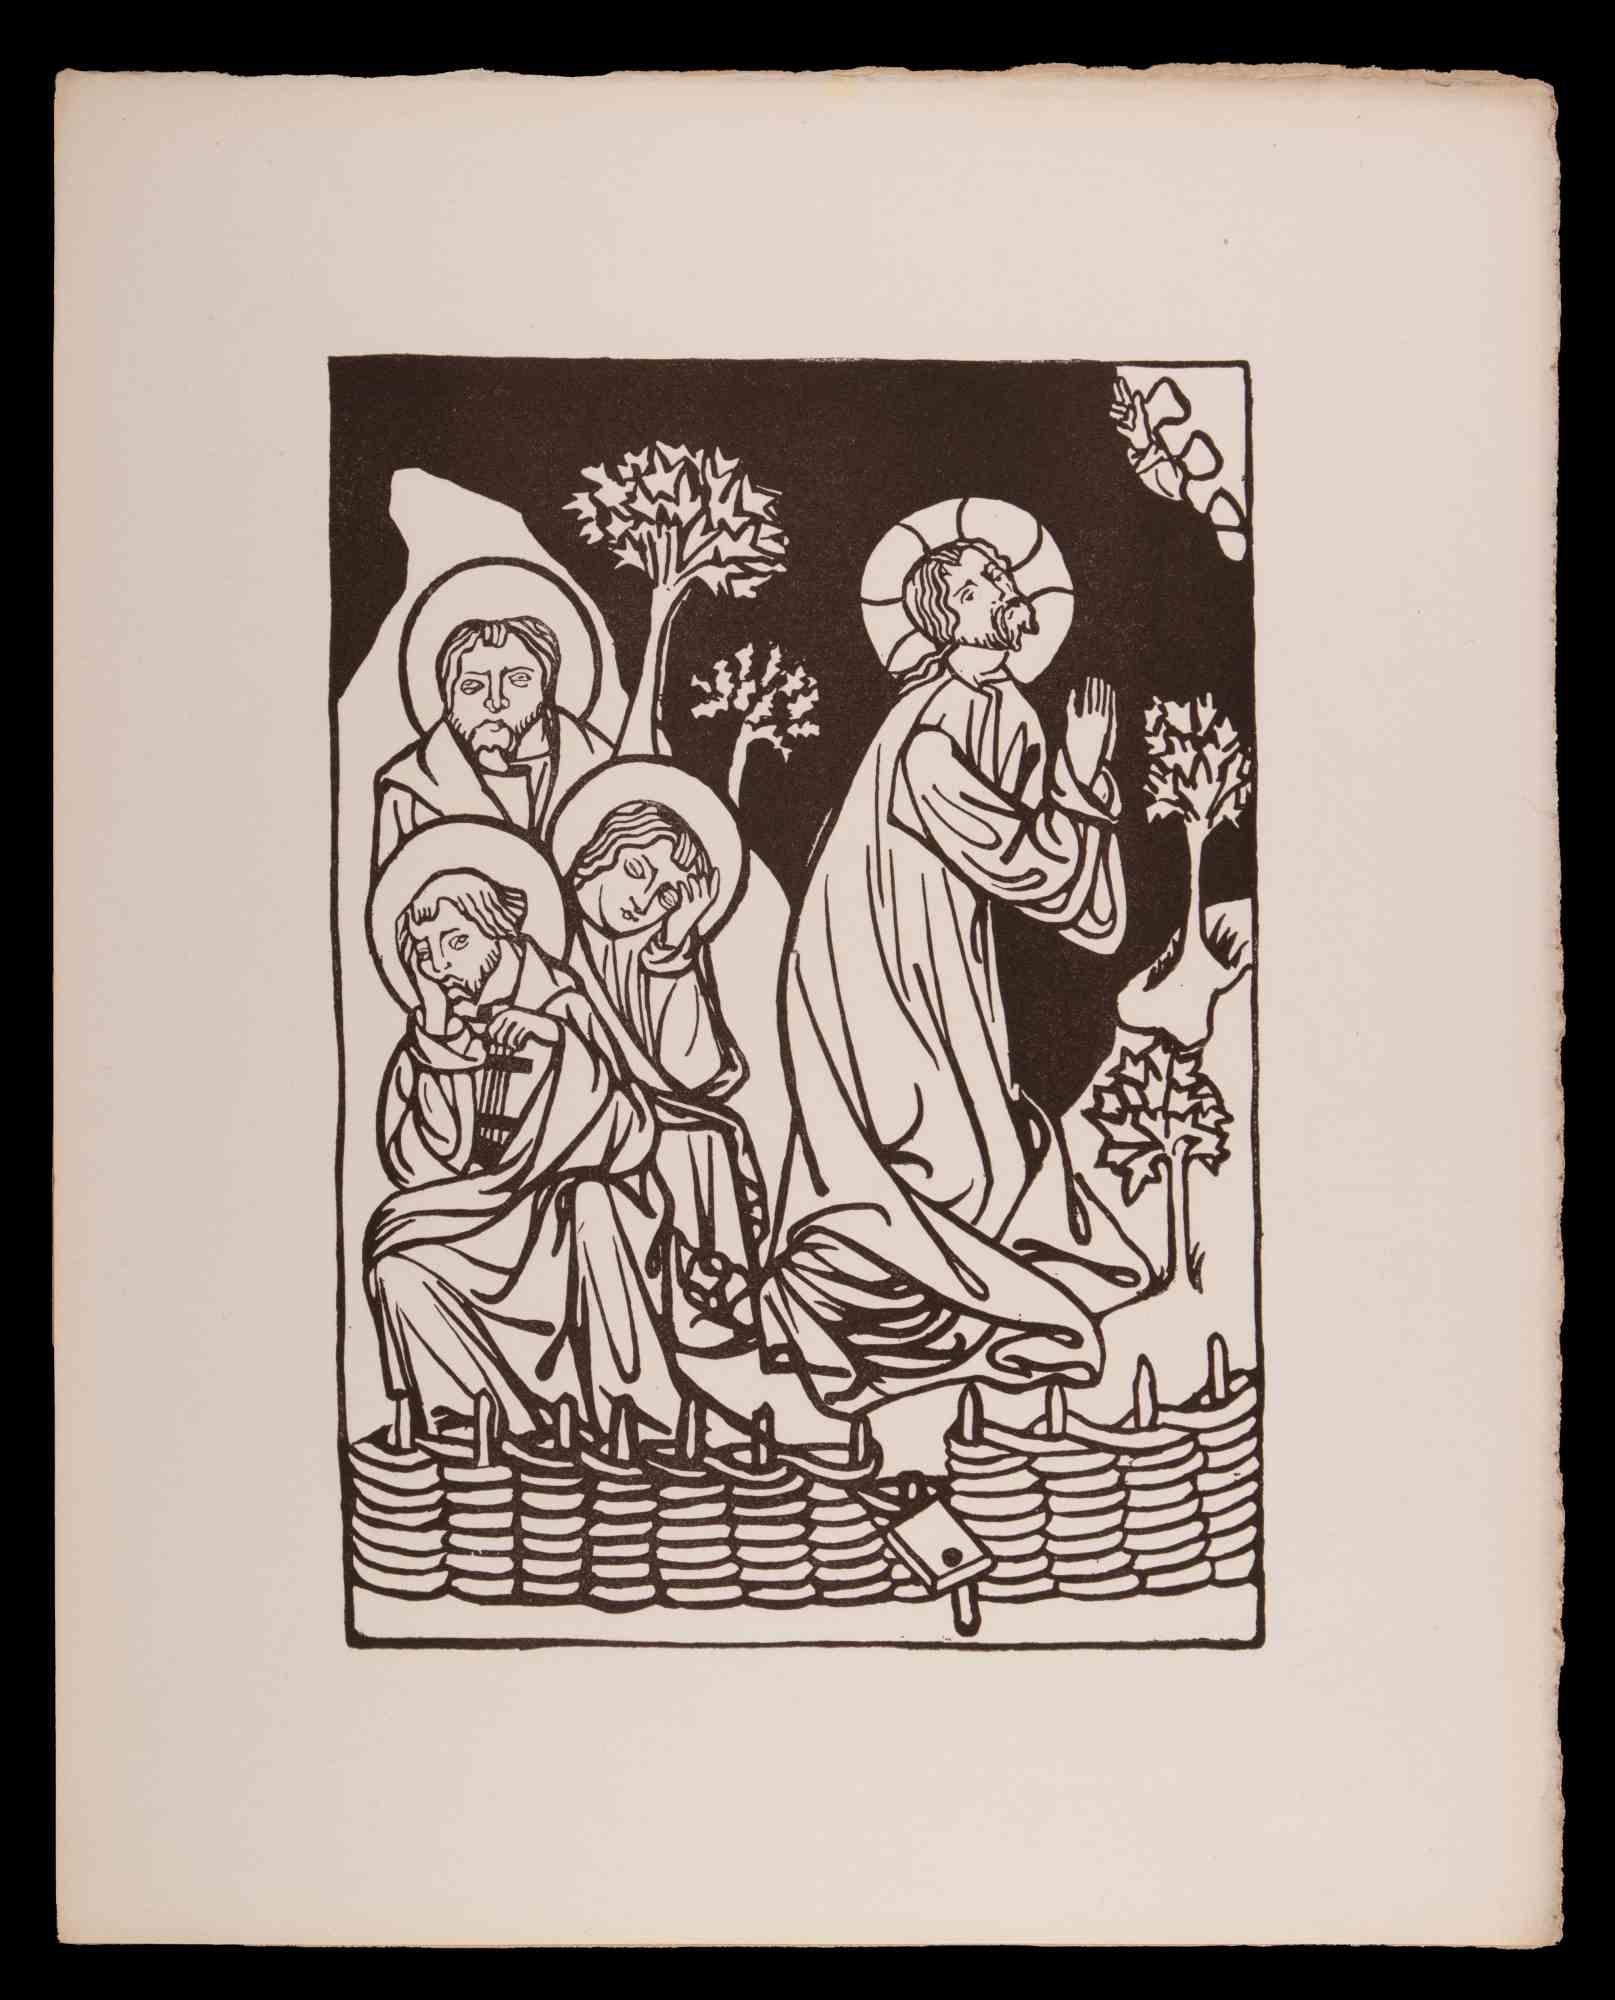 Jesus und die Jünger ist ein Original-Holzschnitt von François Bouchot aus dem Jahr 1922.

Das Kunstwerk ist in gutem Zustand und enthält ein braunes Passepartout aus Karton (36,5x27,5 cm).

Keine Unterschrift.

François Bouchot (1800-1842), Maler